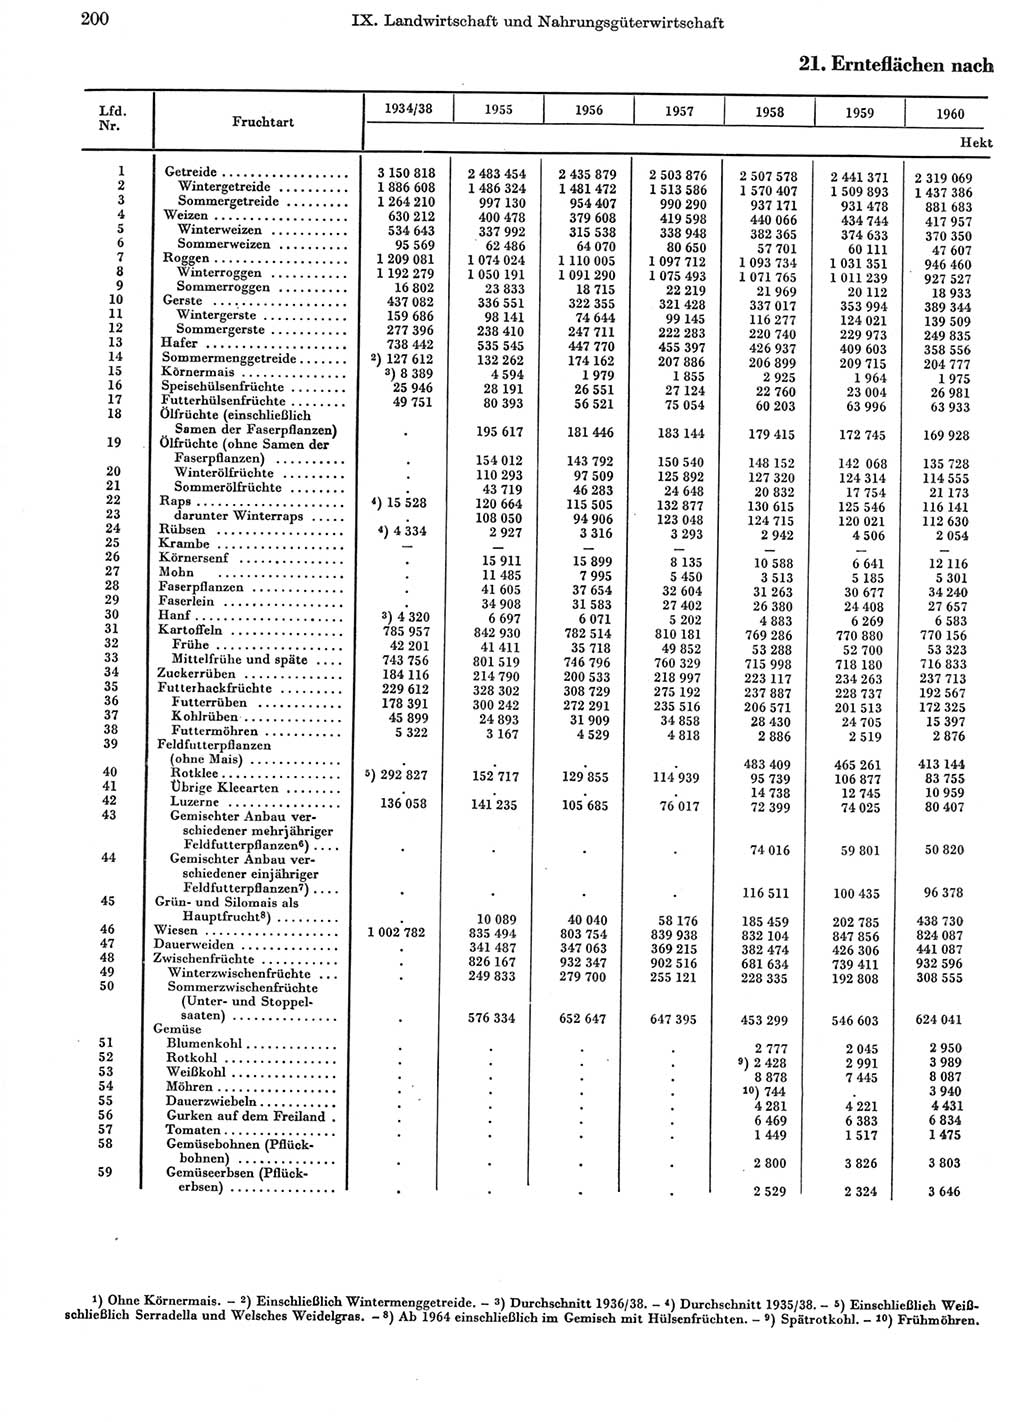 Statistisches Jahrbuch der Deutschen Demokratischen Republik (DDR) 1970, Seite 200 (Stat. Jb. DDR 1970, S. 200)